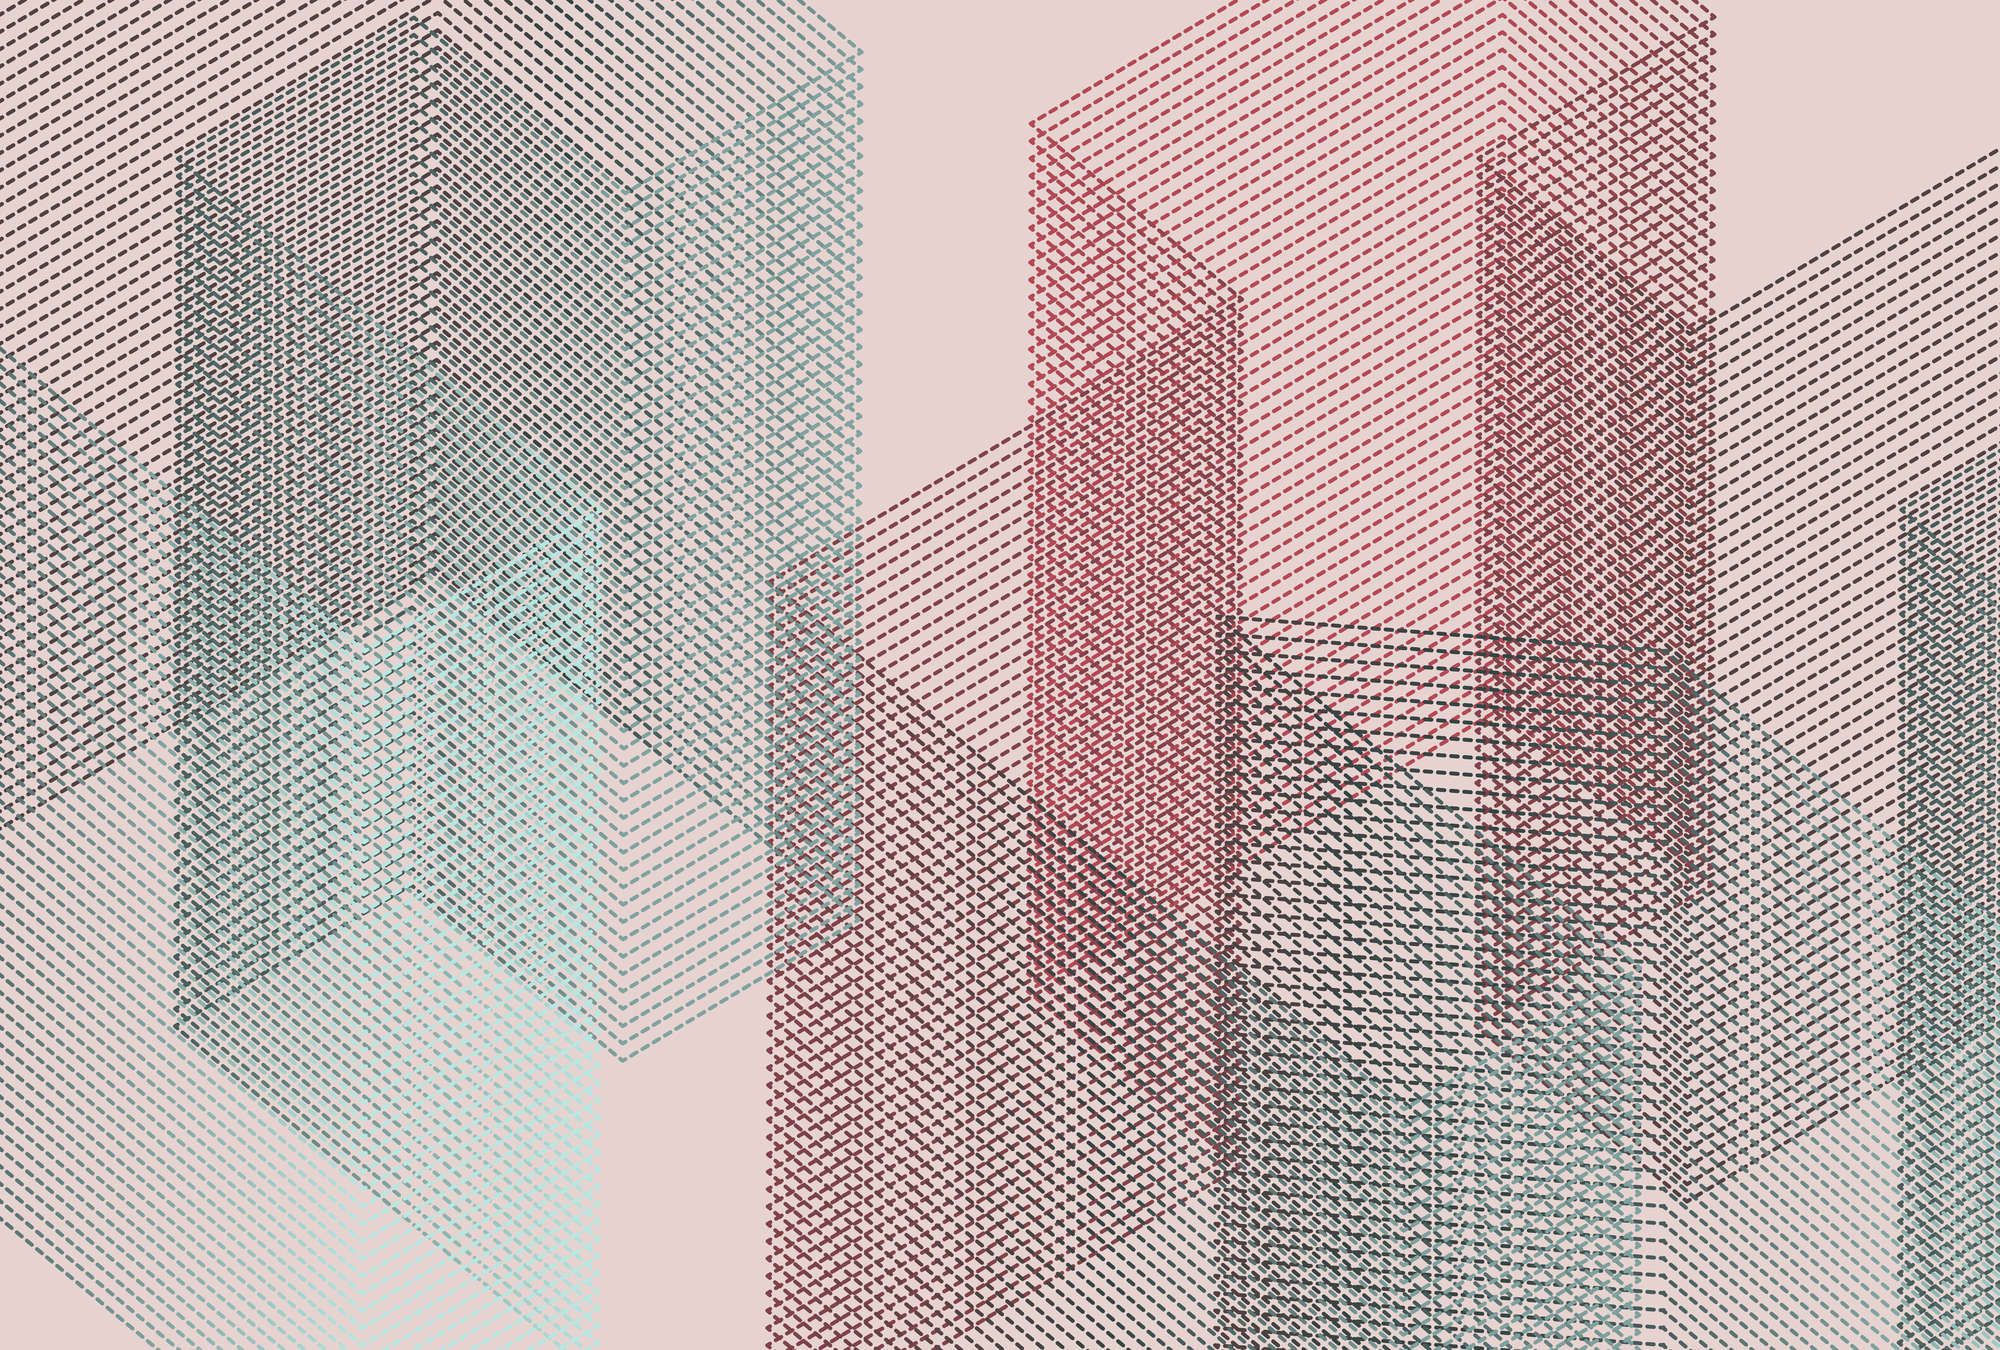             Digital behang »mesh 1« - Abstract 3D ontwerp - Rood, Blauw | Licht structuurvlies
        